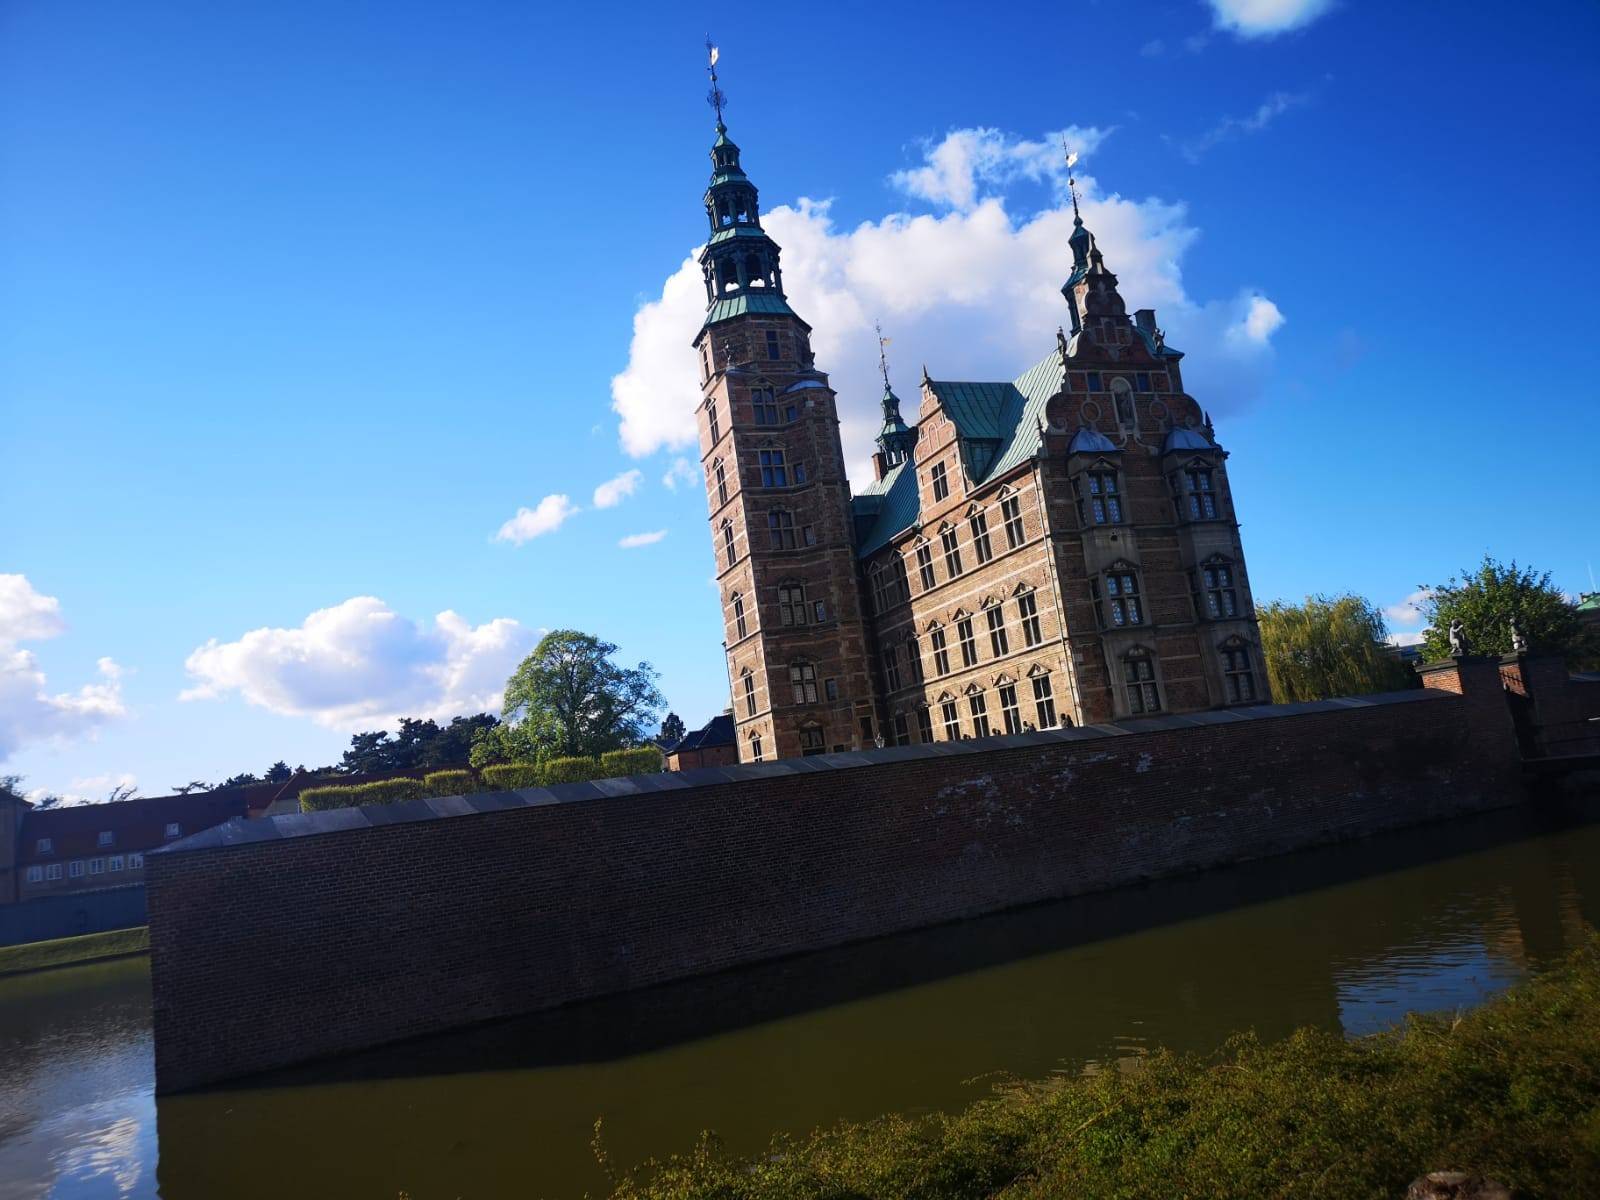 Schloss Rosenborg.